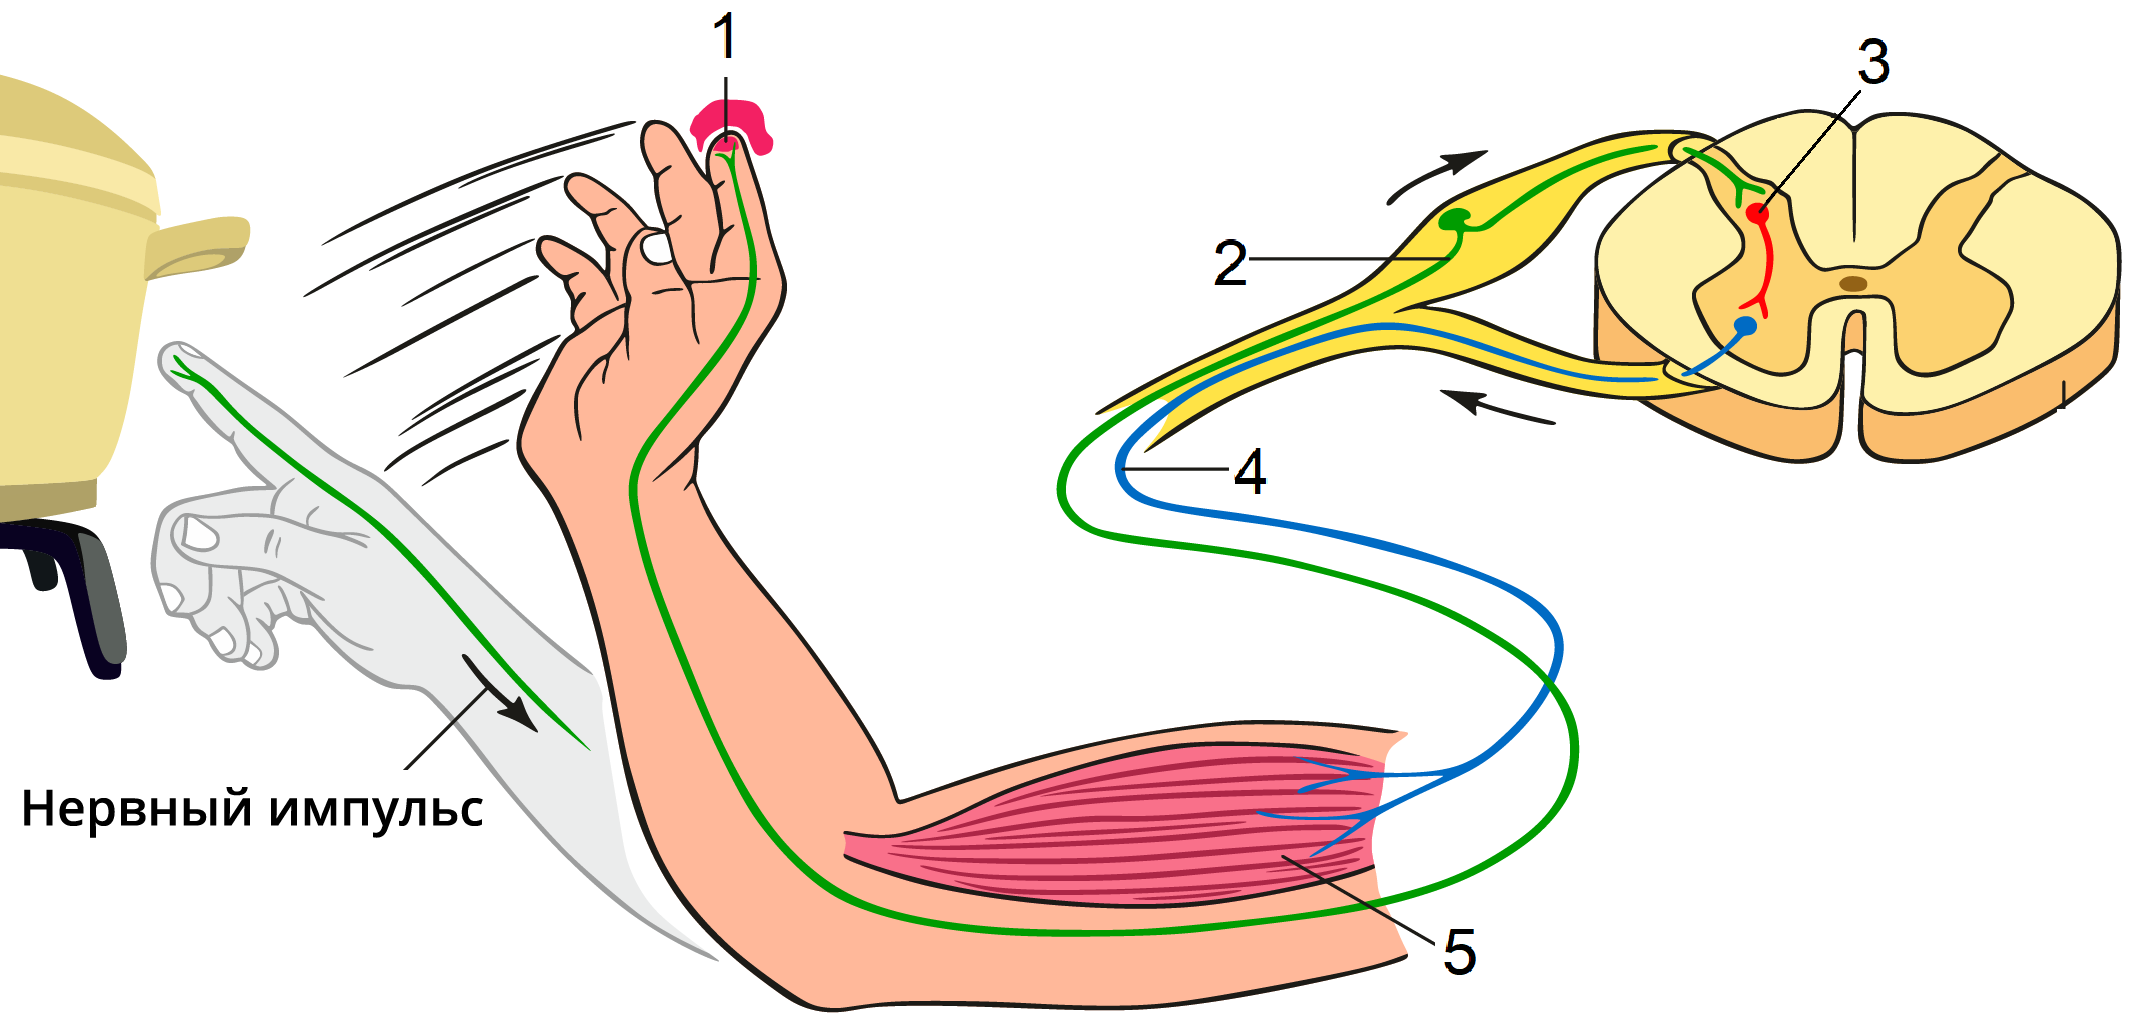 Функции нервной системы двигательная. Схема рефлекторной дуги отдергивания руки от горячего предмета. Рефлекс отдергивания руки от горячего предмета рефлекторная дуга. Схема рефлекторной дуги отдергивания руки. Схема рефлекторной дуги двигательного рефлекса.